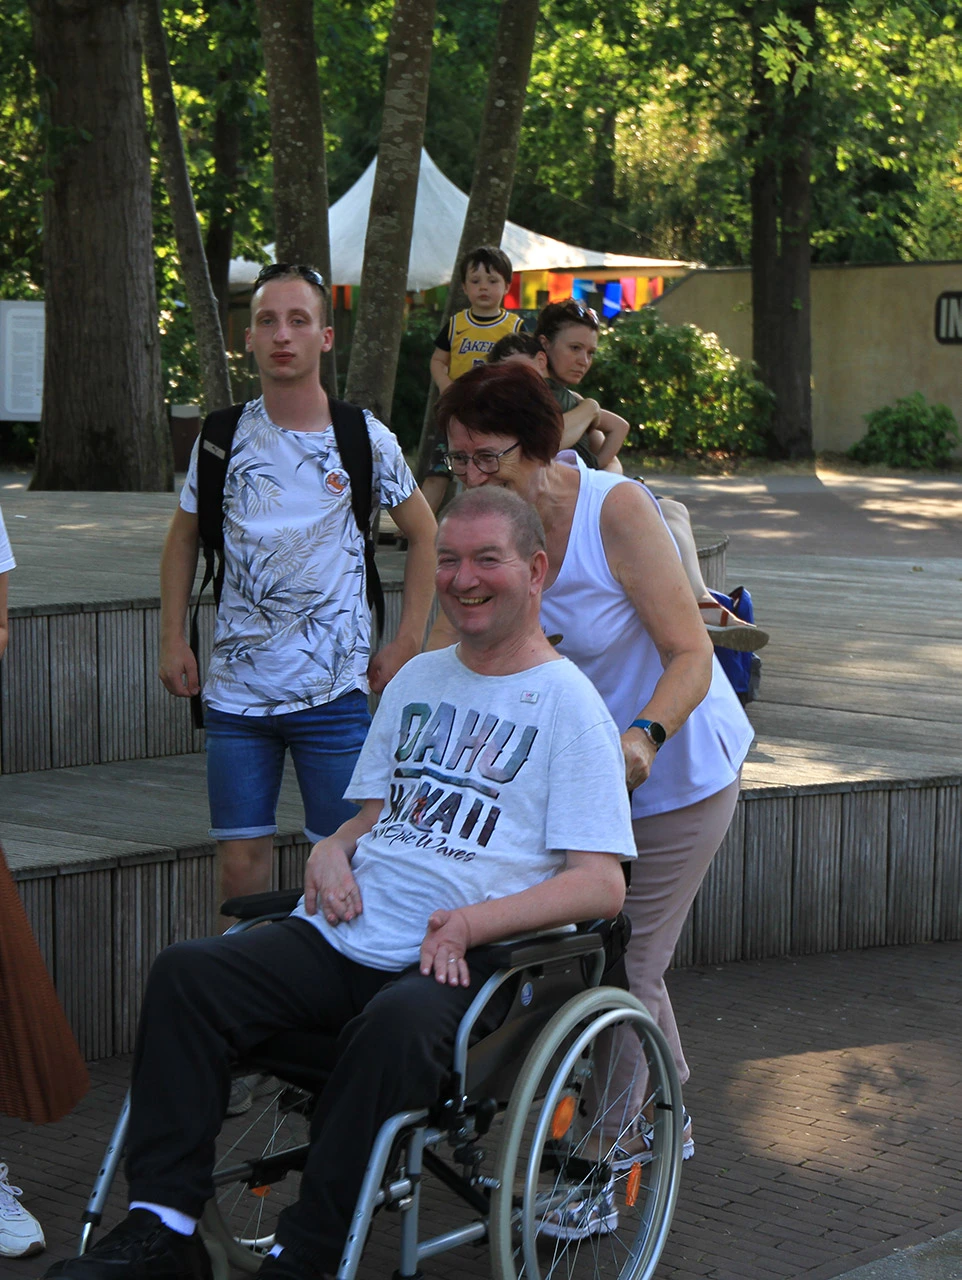 Een man van 65+ met heel kort haar en een zwarte joggingbroek aan met een wit t-shirt met tekst erop zit in een rolstoel. Hij lacht.